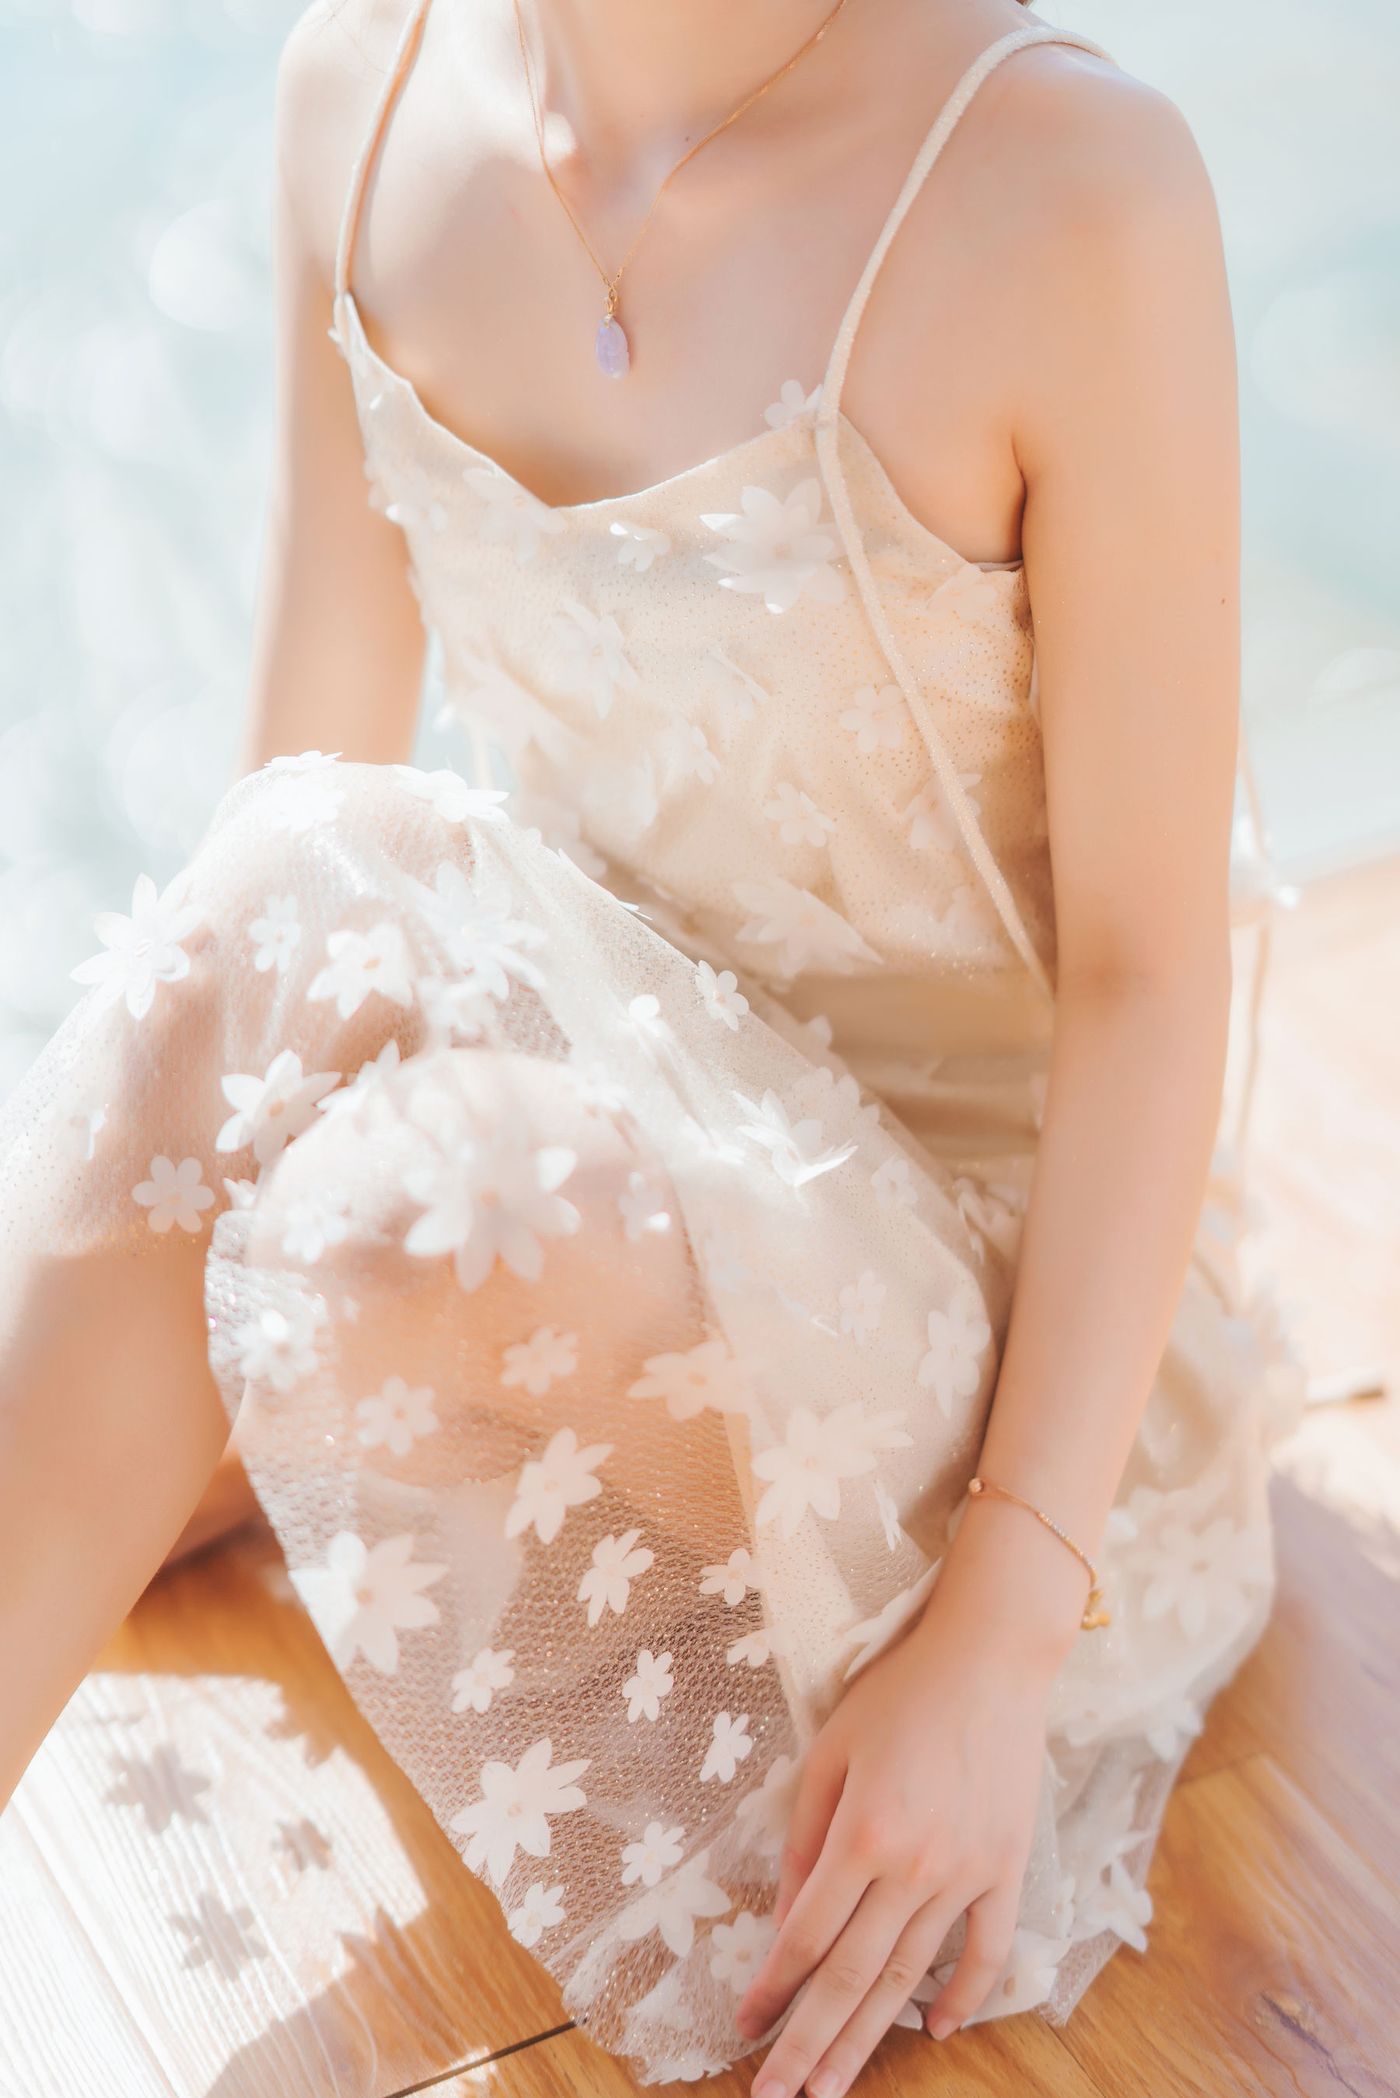 桜桃喵身穿印花吊裙玻璃窗前阳光写真